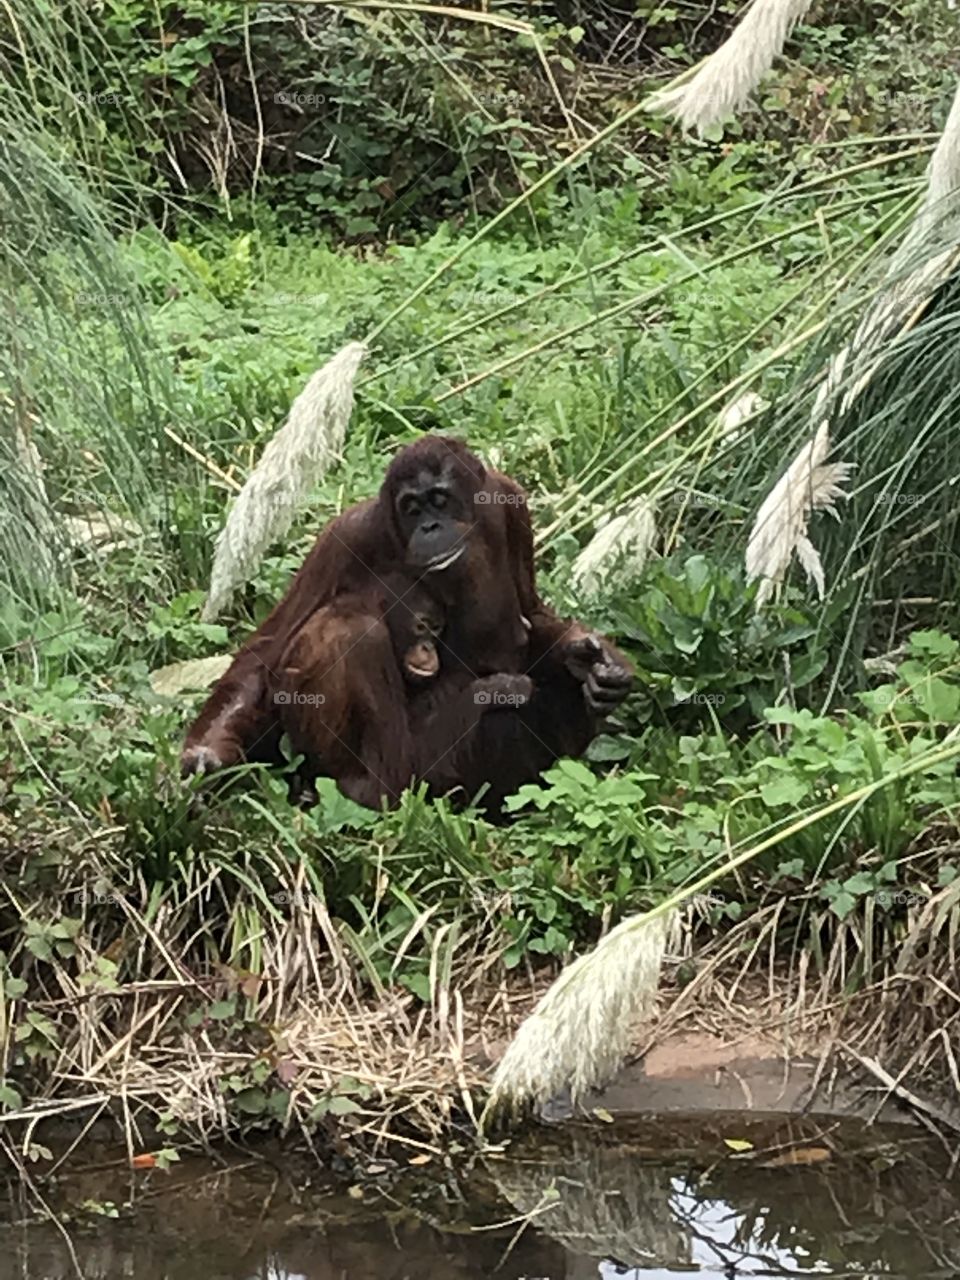 Mummy orangutan and baby